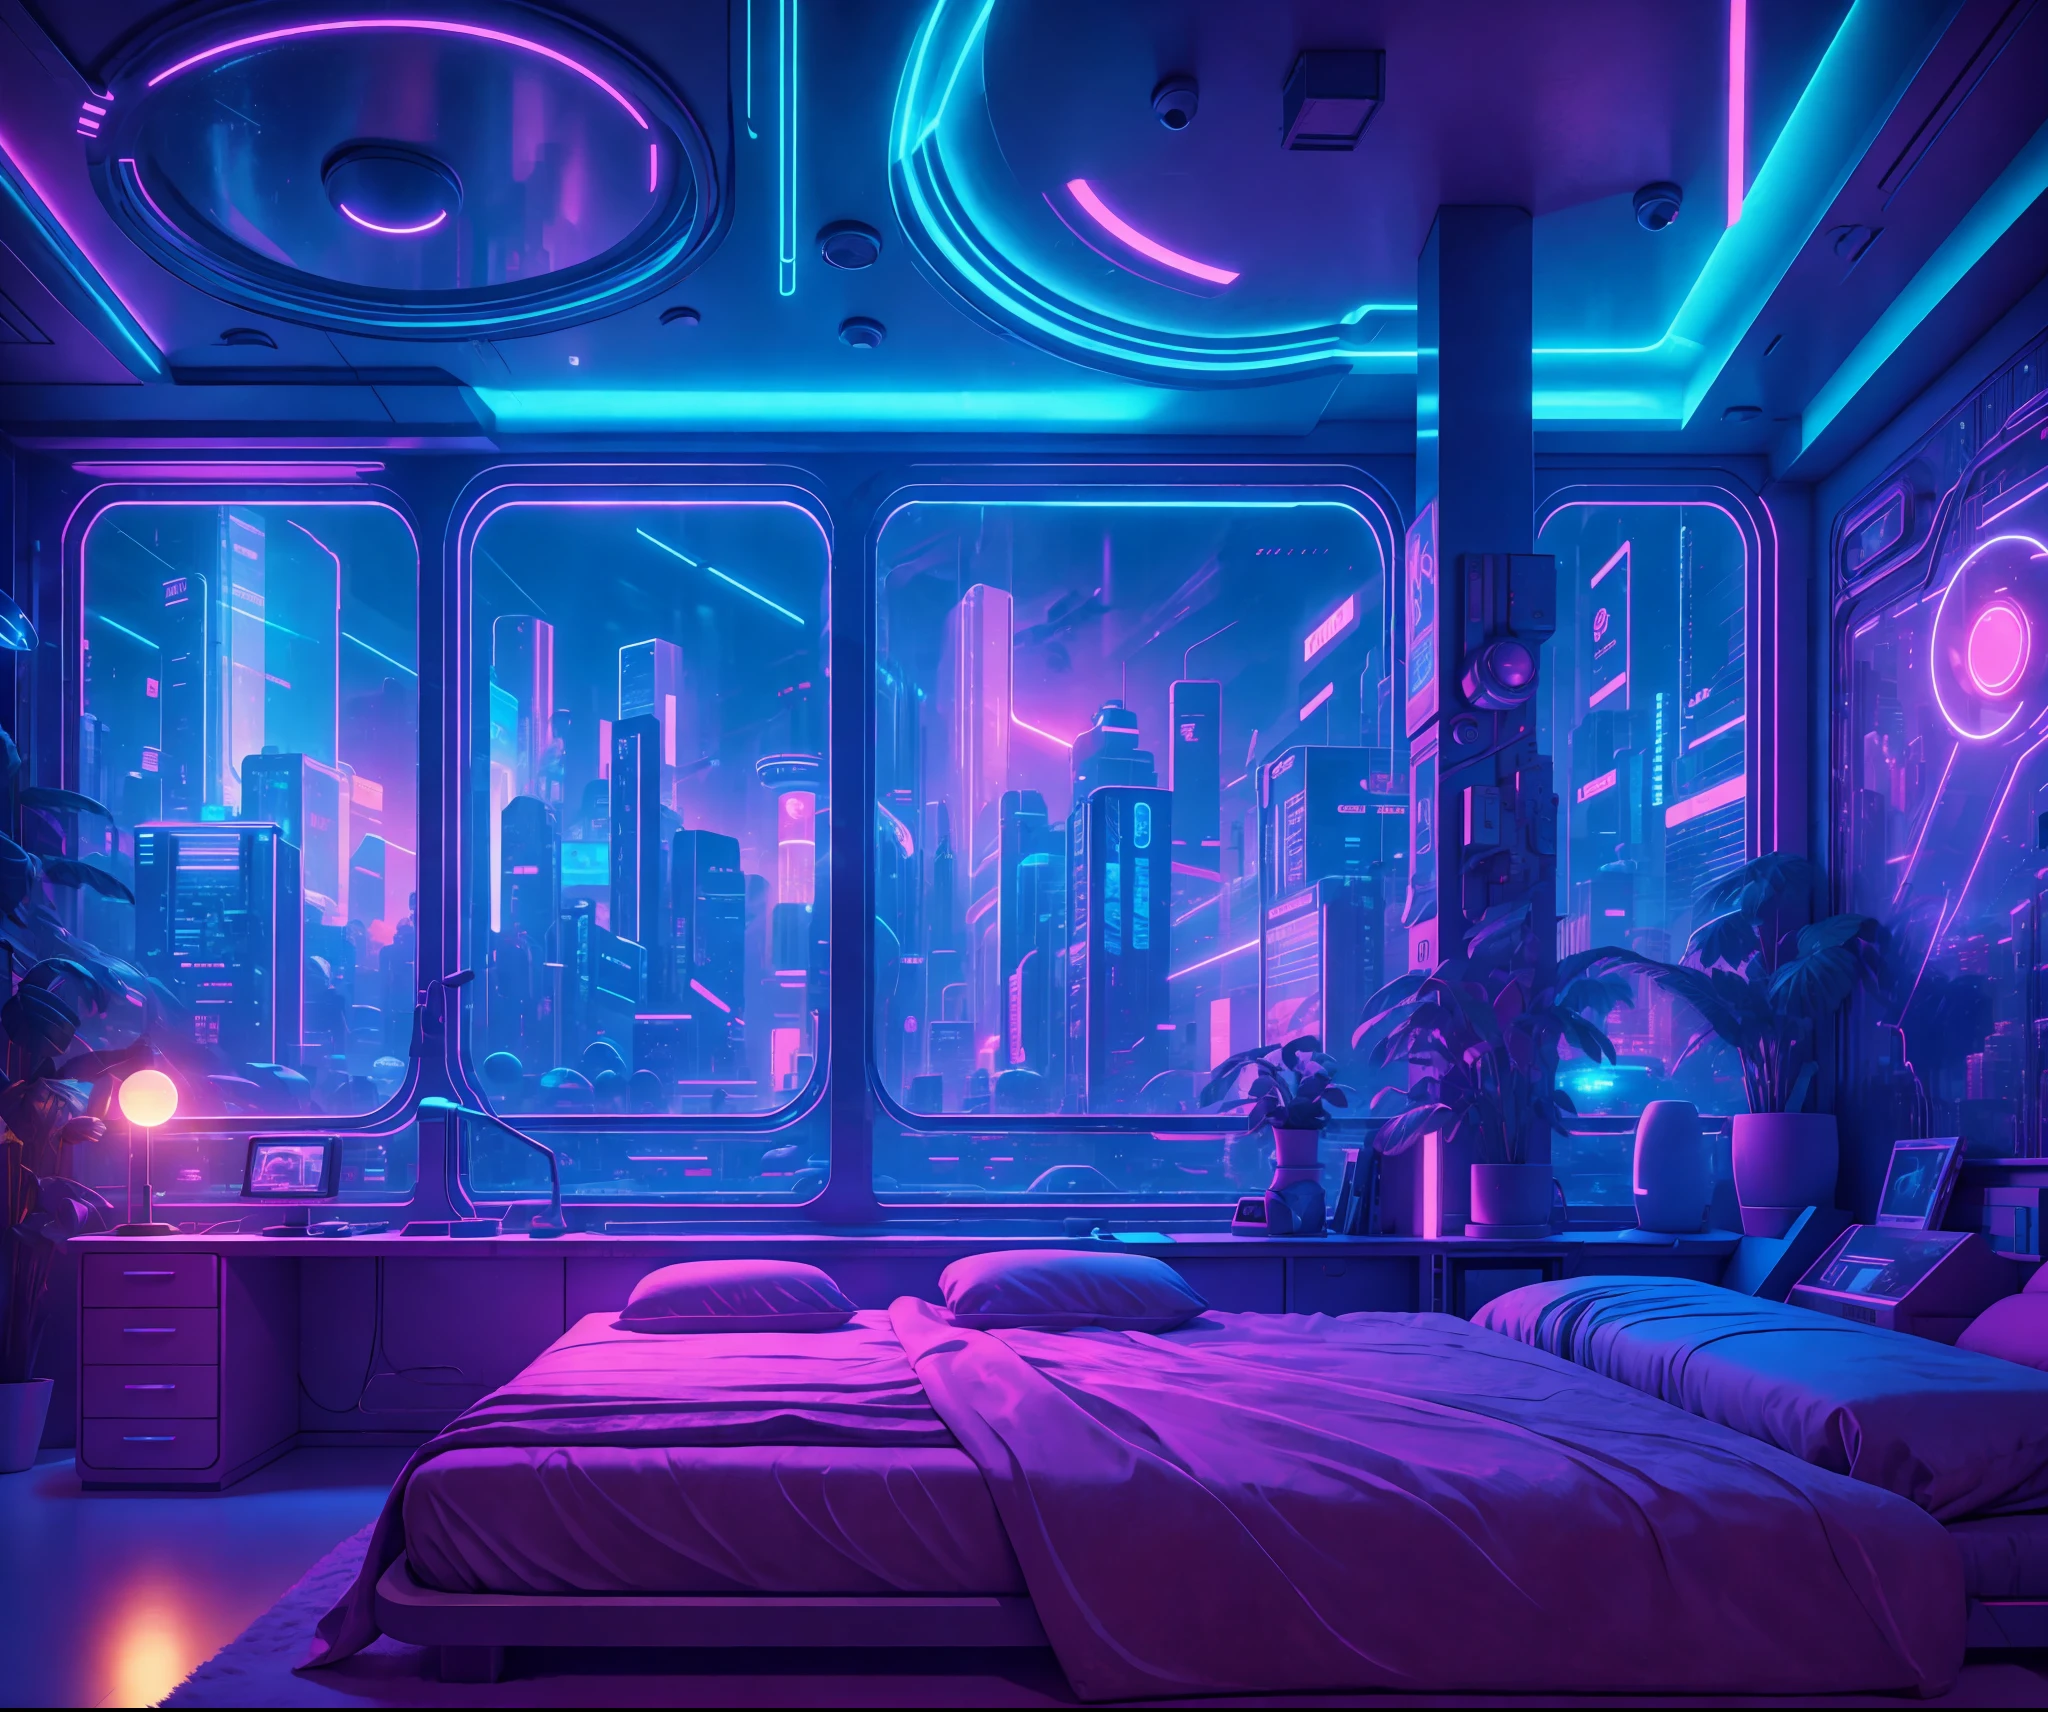 ((Meisterwerk)), (ultra-detailliert), (komplizierte Details), (Hochauflösendes CGI-Artwork 8k), Erstellen Sie ein Bild eines kleinen retro-futuristischen und realistischen Vaporwave Cyberpunk (Schlafzimmer) nachts. Eine der Wände sollte ein großes Fenster mit einem belebten, Bunt, und detailliert (cyberpunk 2077), Neon-Stadtbild. Die Stadt sollte einen einzigartigen futuristischen Stil mit vielen Farben haben, Neonlichter, Zeichen, und Gebäude unterschiedlicher Größe. Das Stadtbild sollte extrem detailliert sein und eine Tiefenschärfe aufweisen. Die Stadt sollte viele einzigartige visuelle Sehenswürdigkeiten mit vielen kleinen Details aufweisen. Nutzen Sie atmosphärisches Licht und Umgebungslicht, um Tiefe zu erzeugen und das Gefühl einer geschäftigen futuristischen Stadt vor dem Fenster hervorzurufen.. Achten Sie besonders auf Details wie komplizierte, hires eyes and 90s Schlafzimmer accents. Kamera: Weite Aufnahme mit Bett oder Schreibtisch und Fenster. Das Fenster sollte der Mittelpunkt des Bildes sein. Beleuchtung: Verwenden Sie atmosphärische und volumetrische Beleuchtung, um die Details des Stadtbildes hervorzuheben. The room should be illuminated by the Neonlichter from the cityscape.